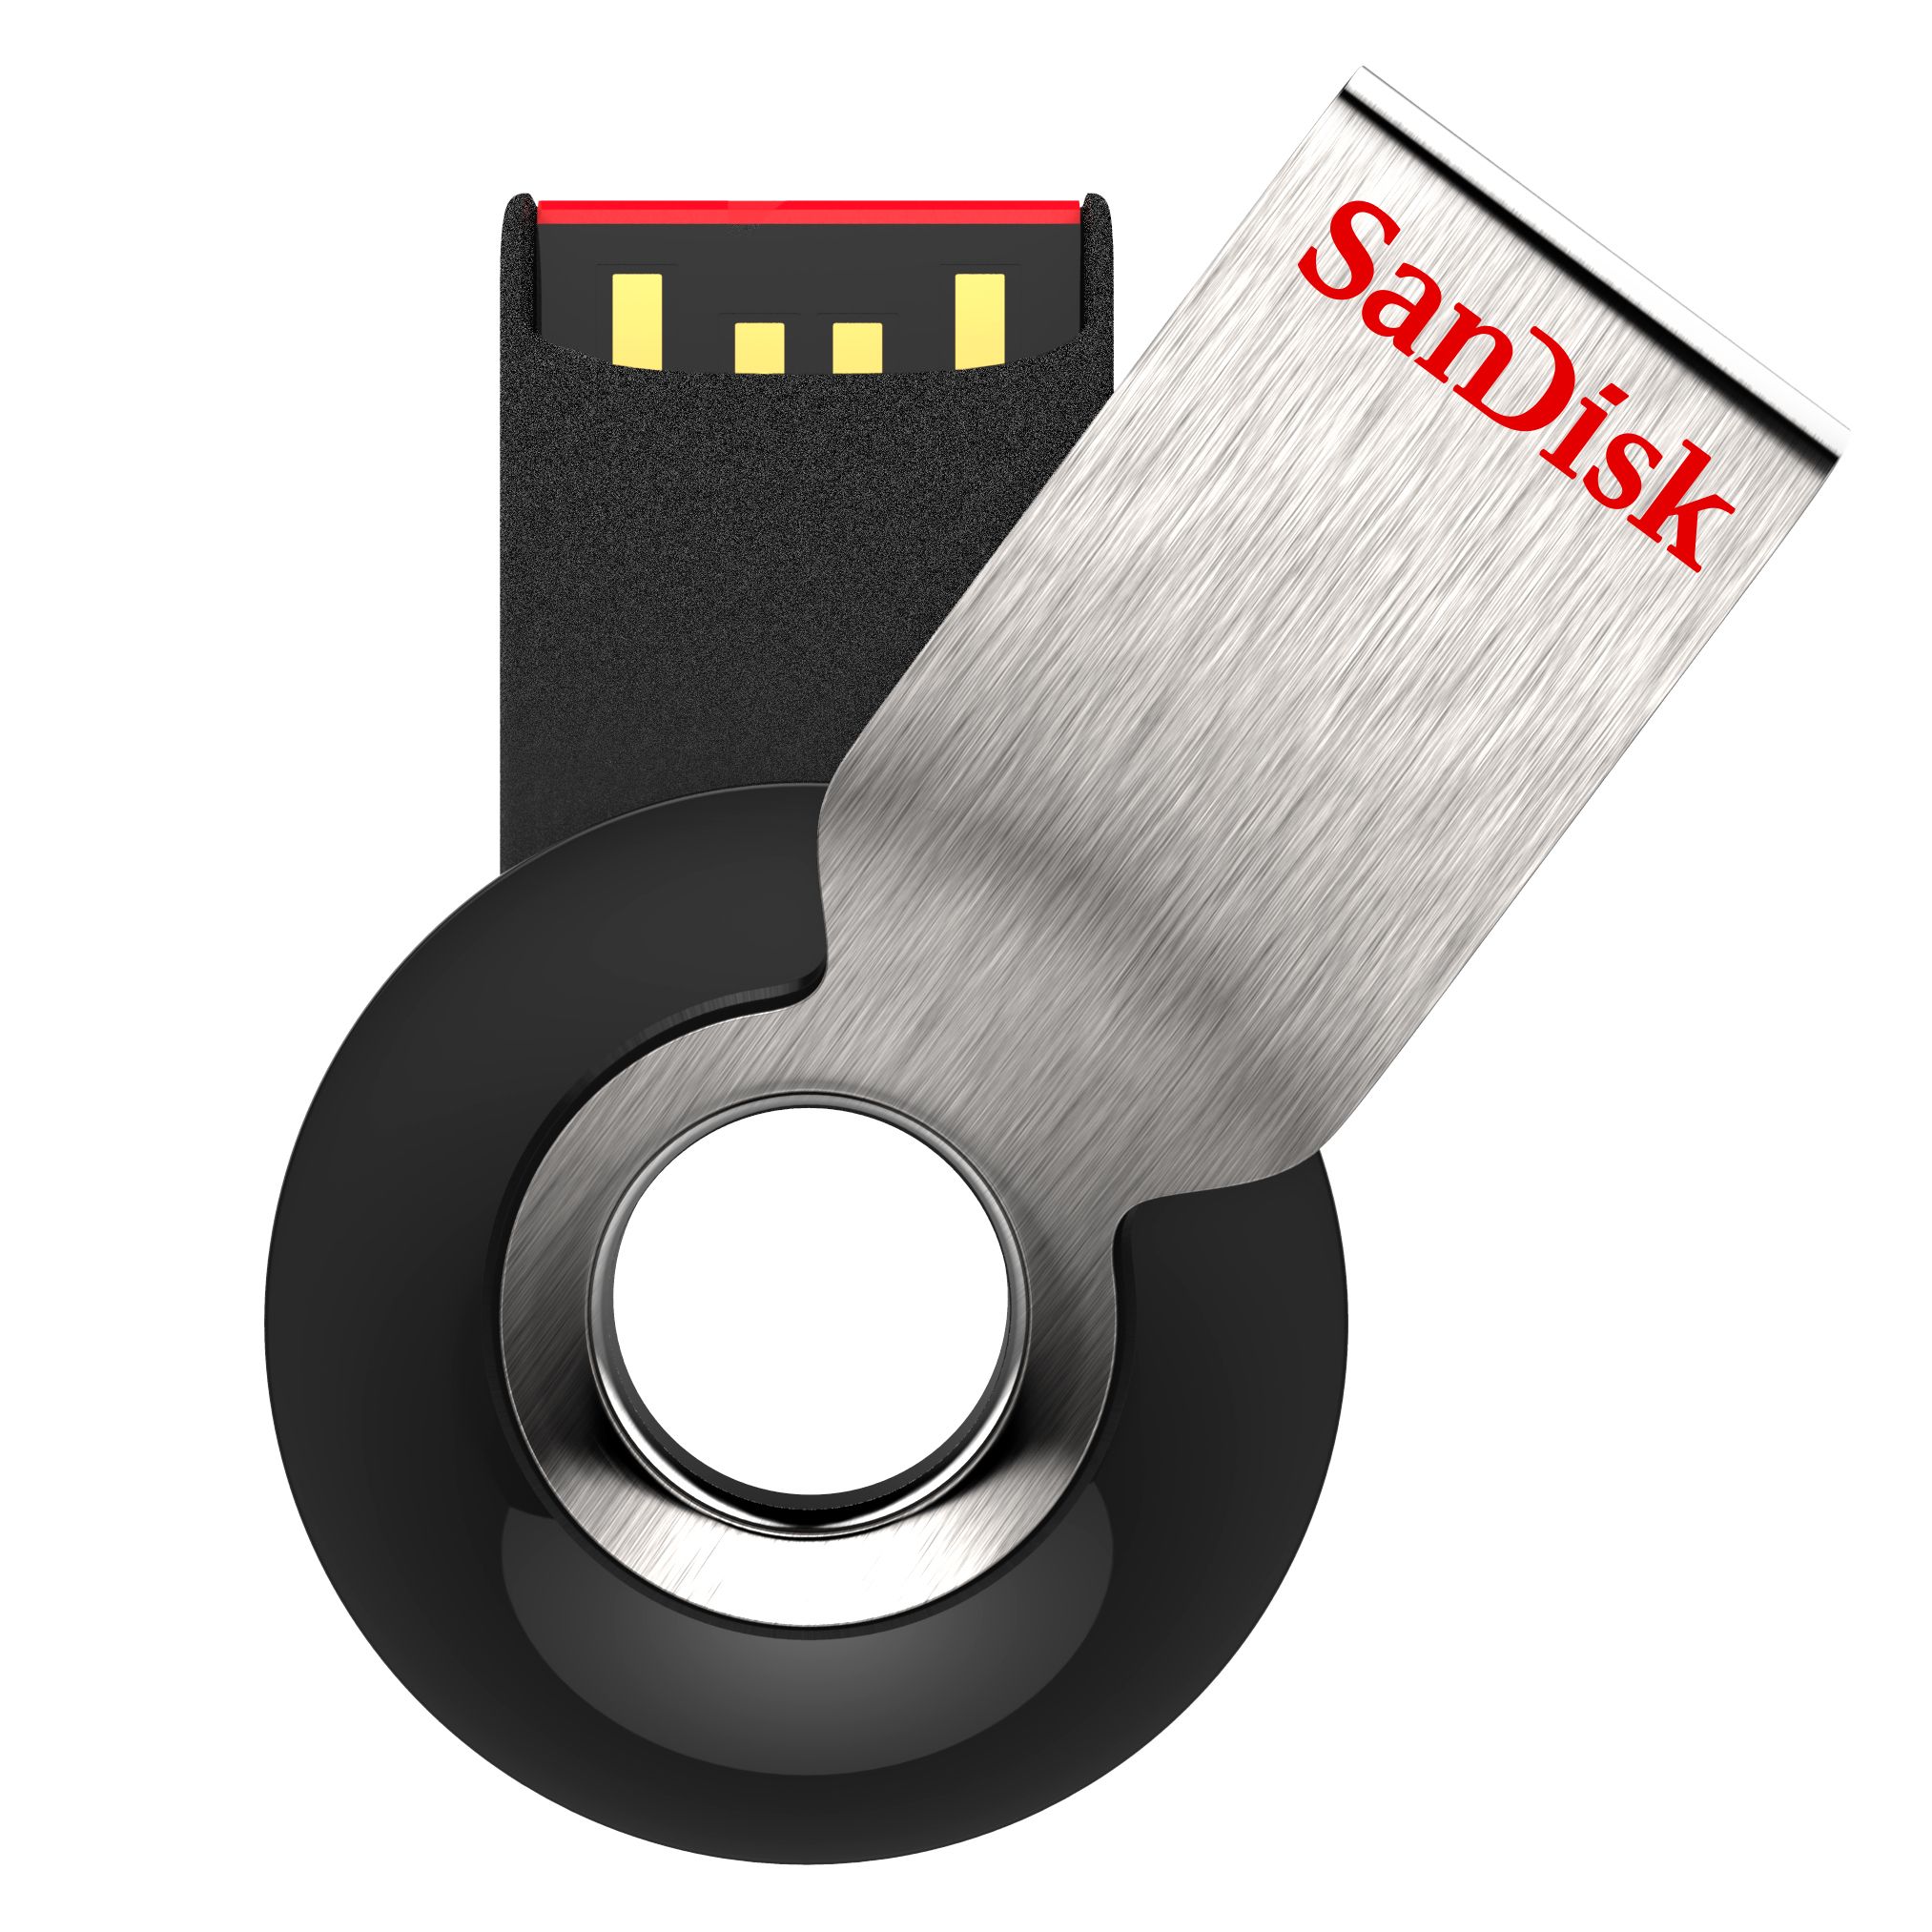 Cruzer Orbit USB Flash Drive - 32GB